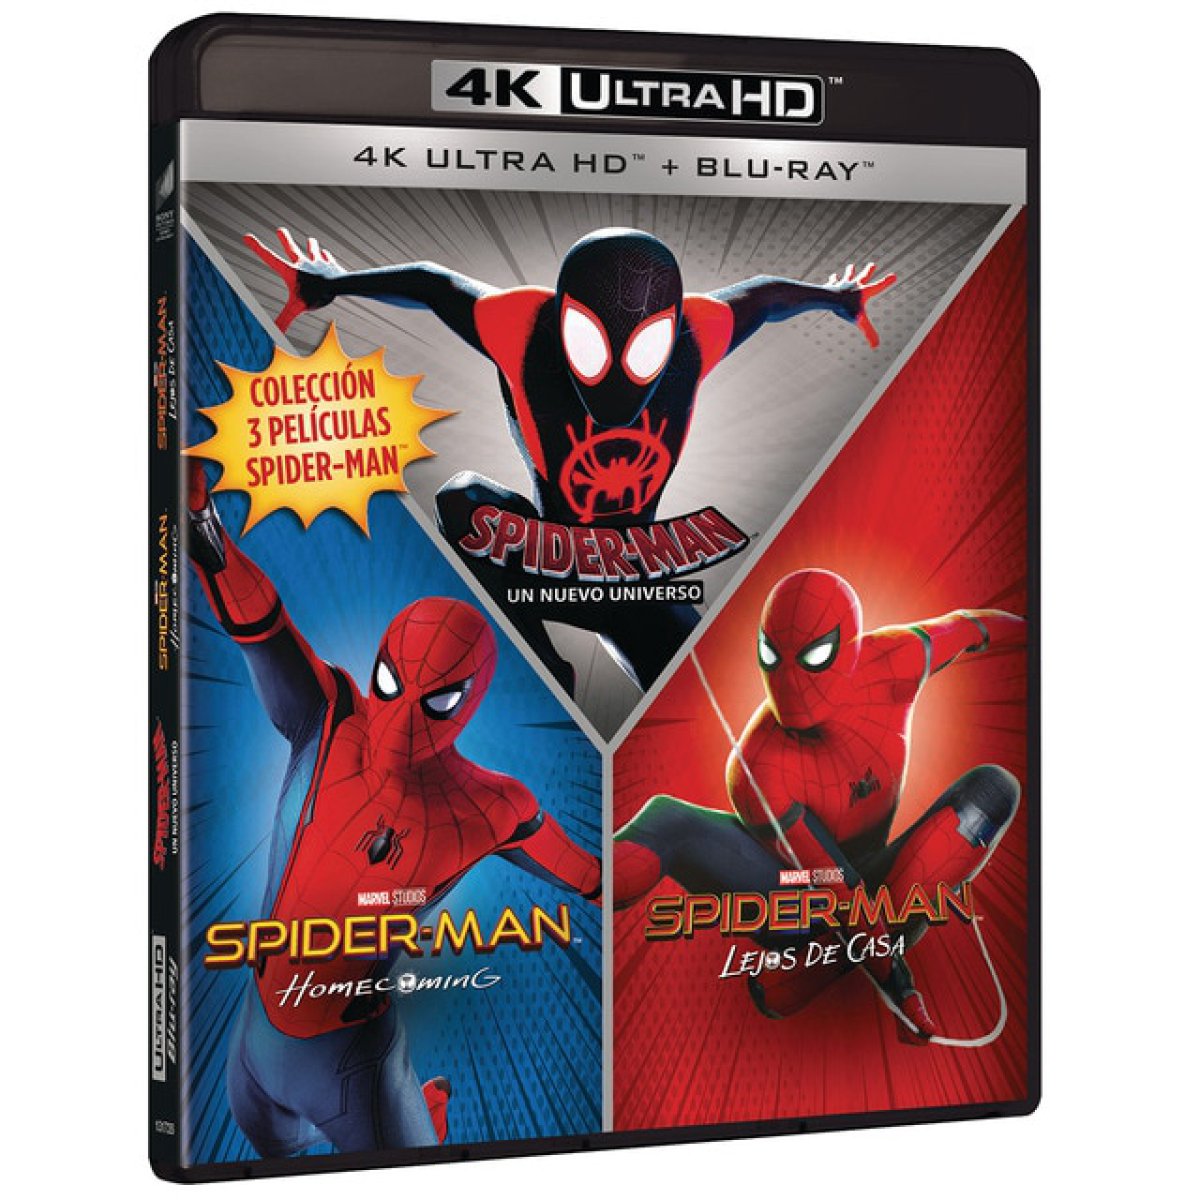 Colección Spider-Man en 4K